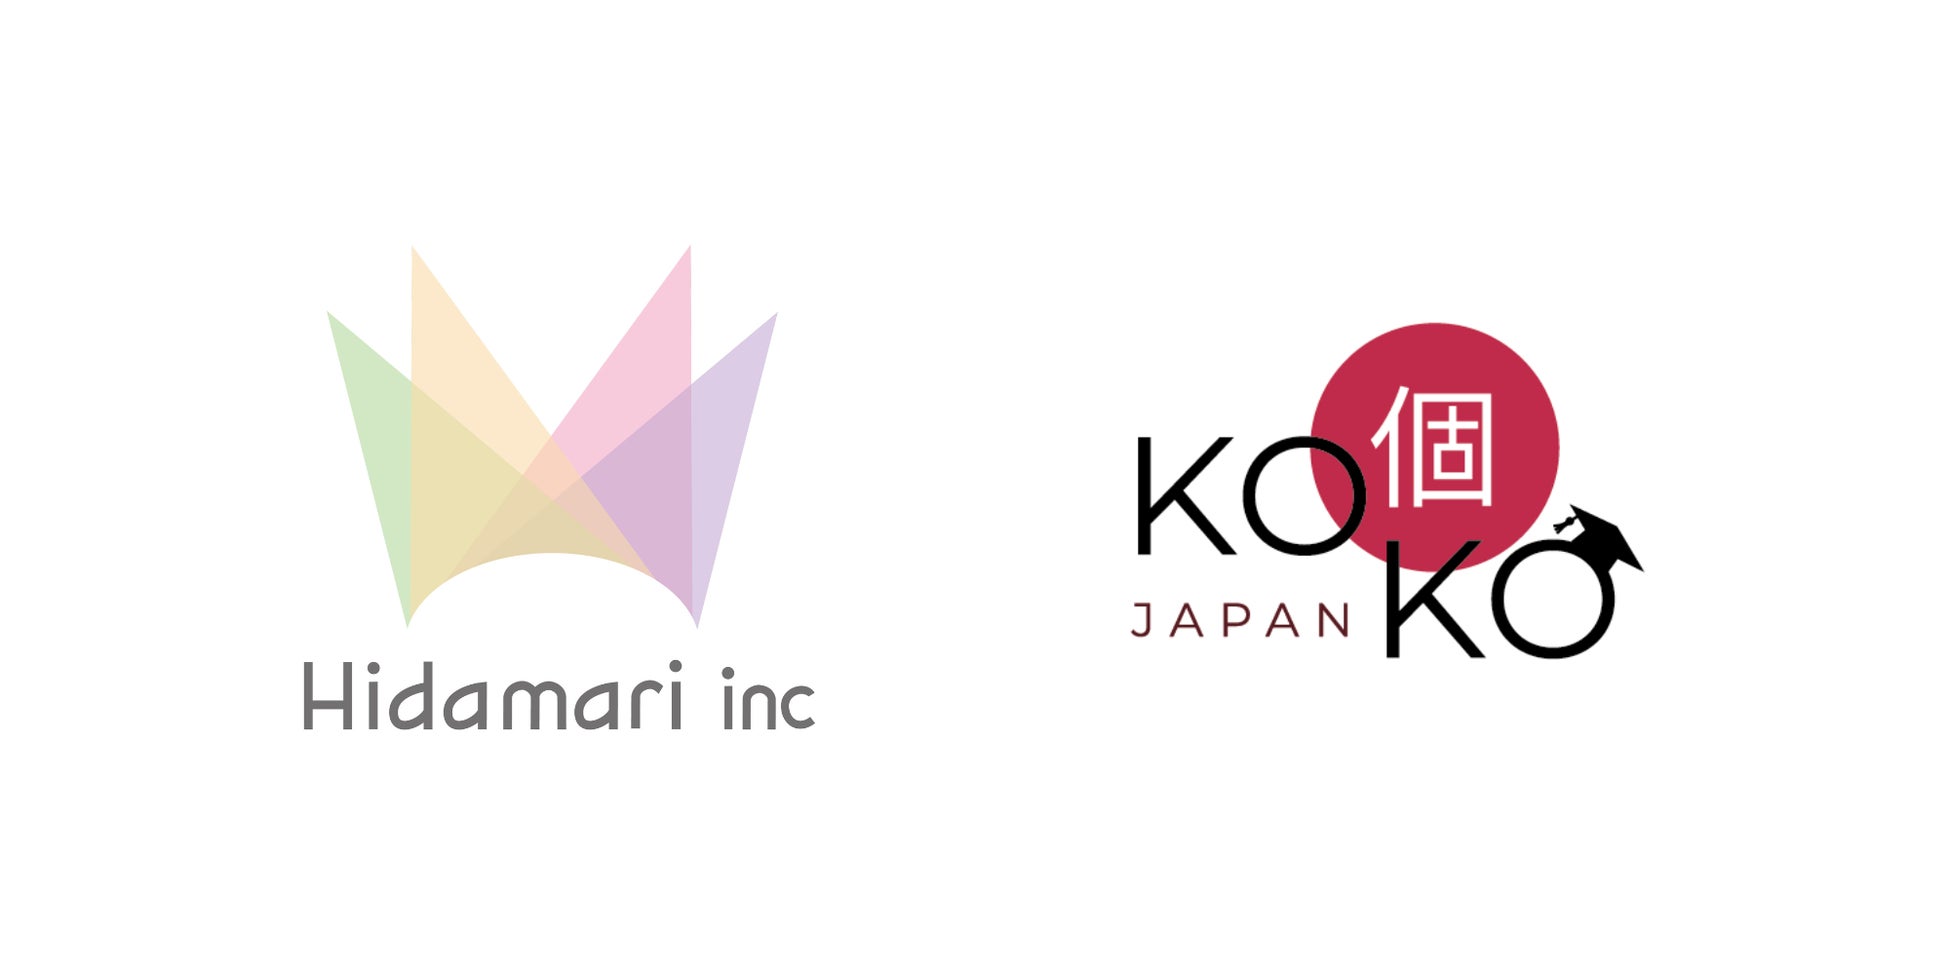 シェアハウスひだまりが日本への留学生をサポートするKOKO JAPANと業務締結。住居探しに悩む外国人留学生の滞在先と日本語を話す機会を提供のサブ画像1